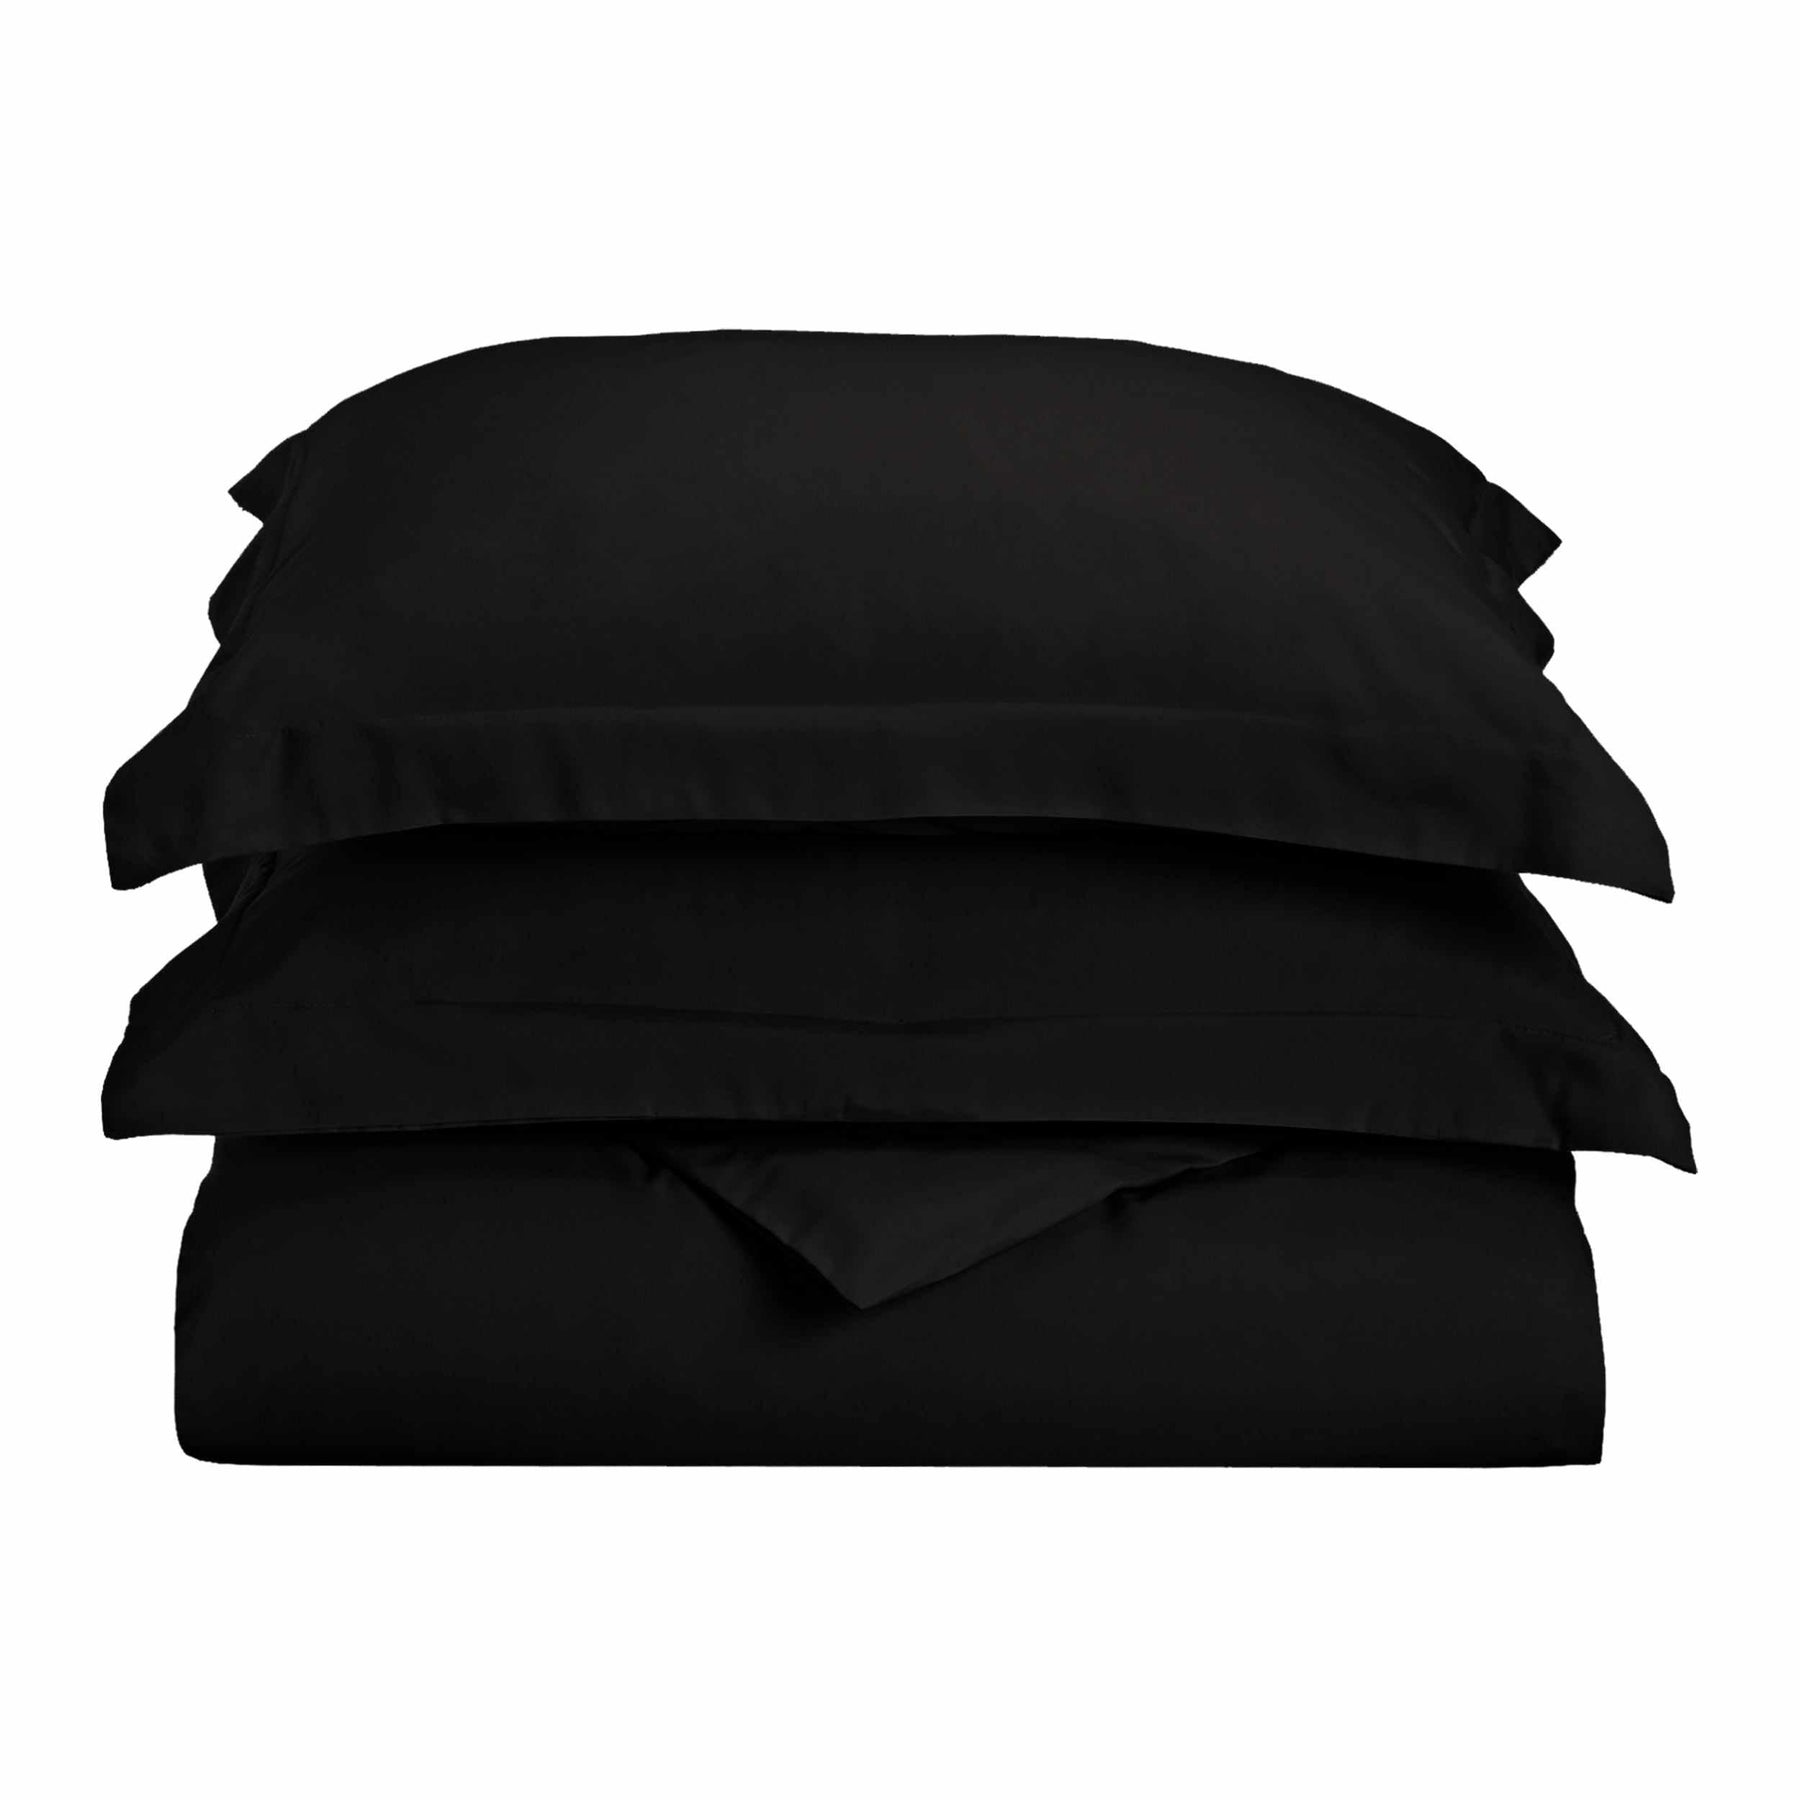  Superior Solid Microfiber Wrinkle Resistant Duvet Cover Set - Black